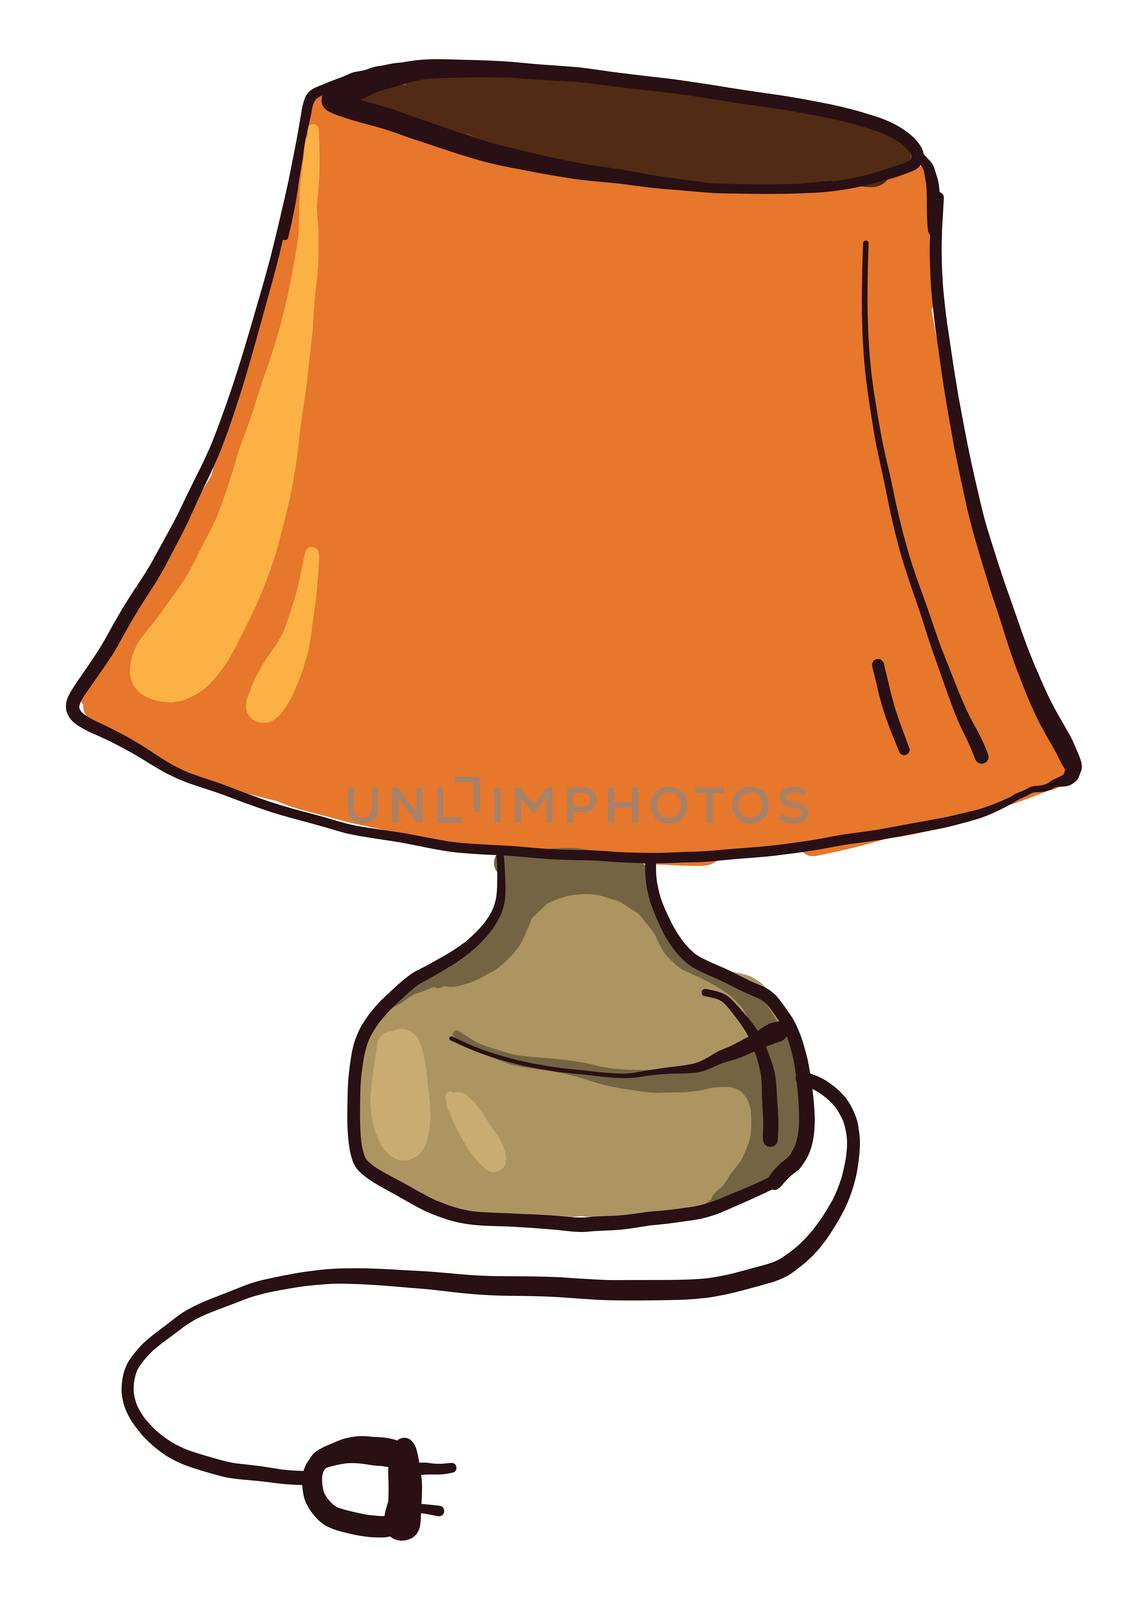 Orange lamp , illustration, vector on white background by Morphart